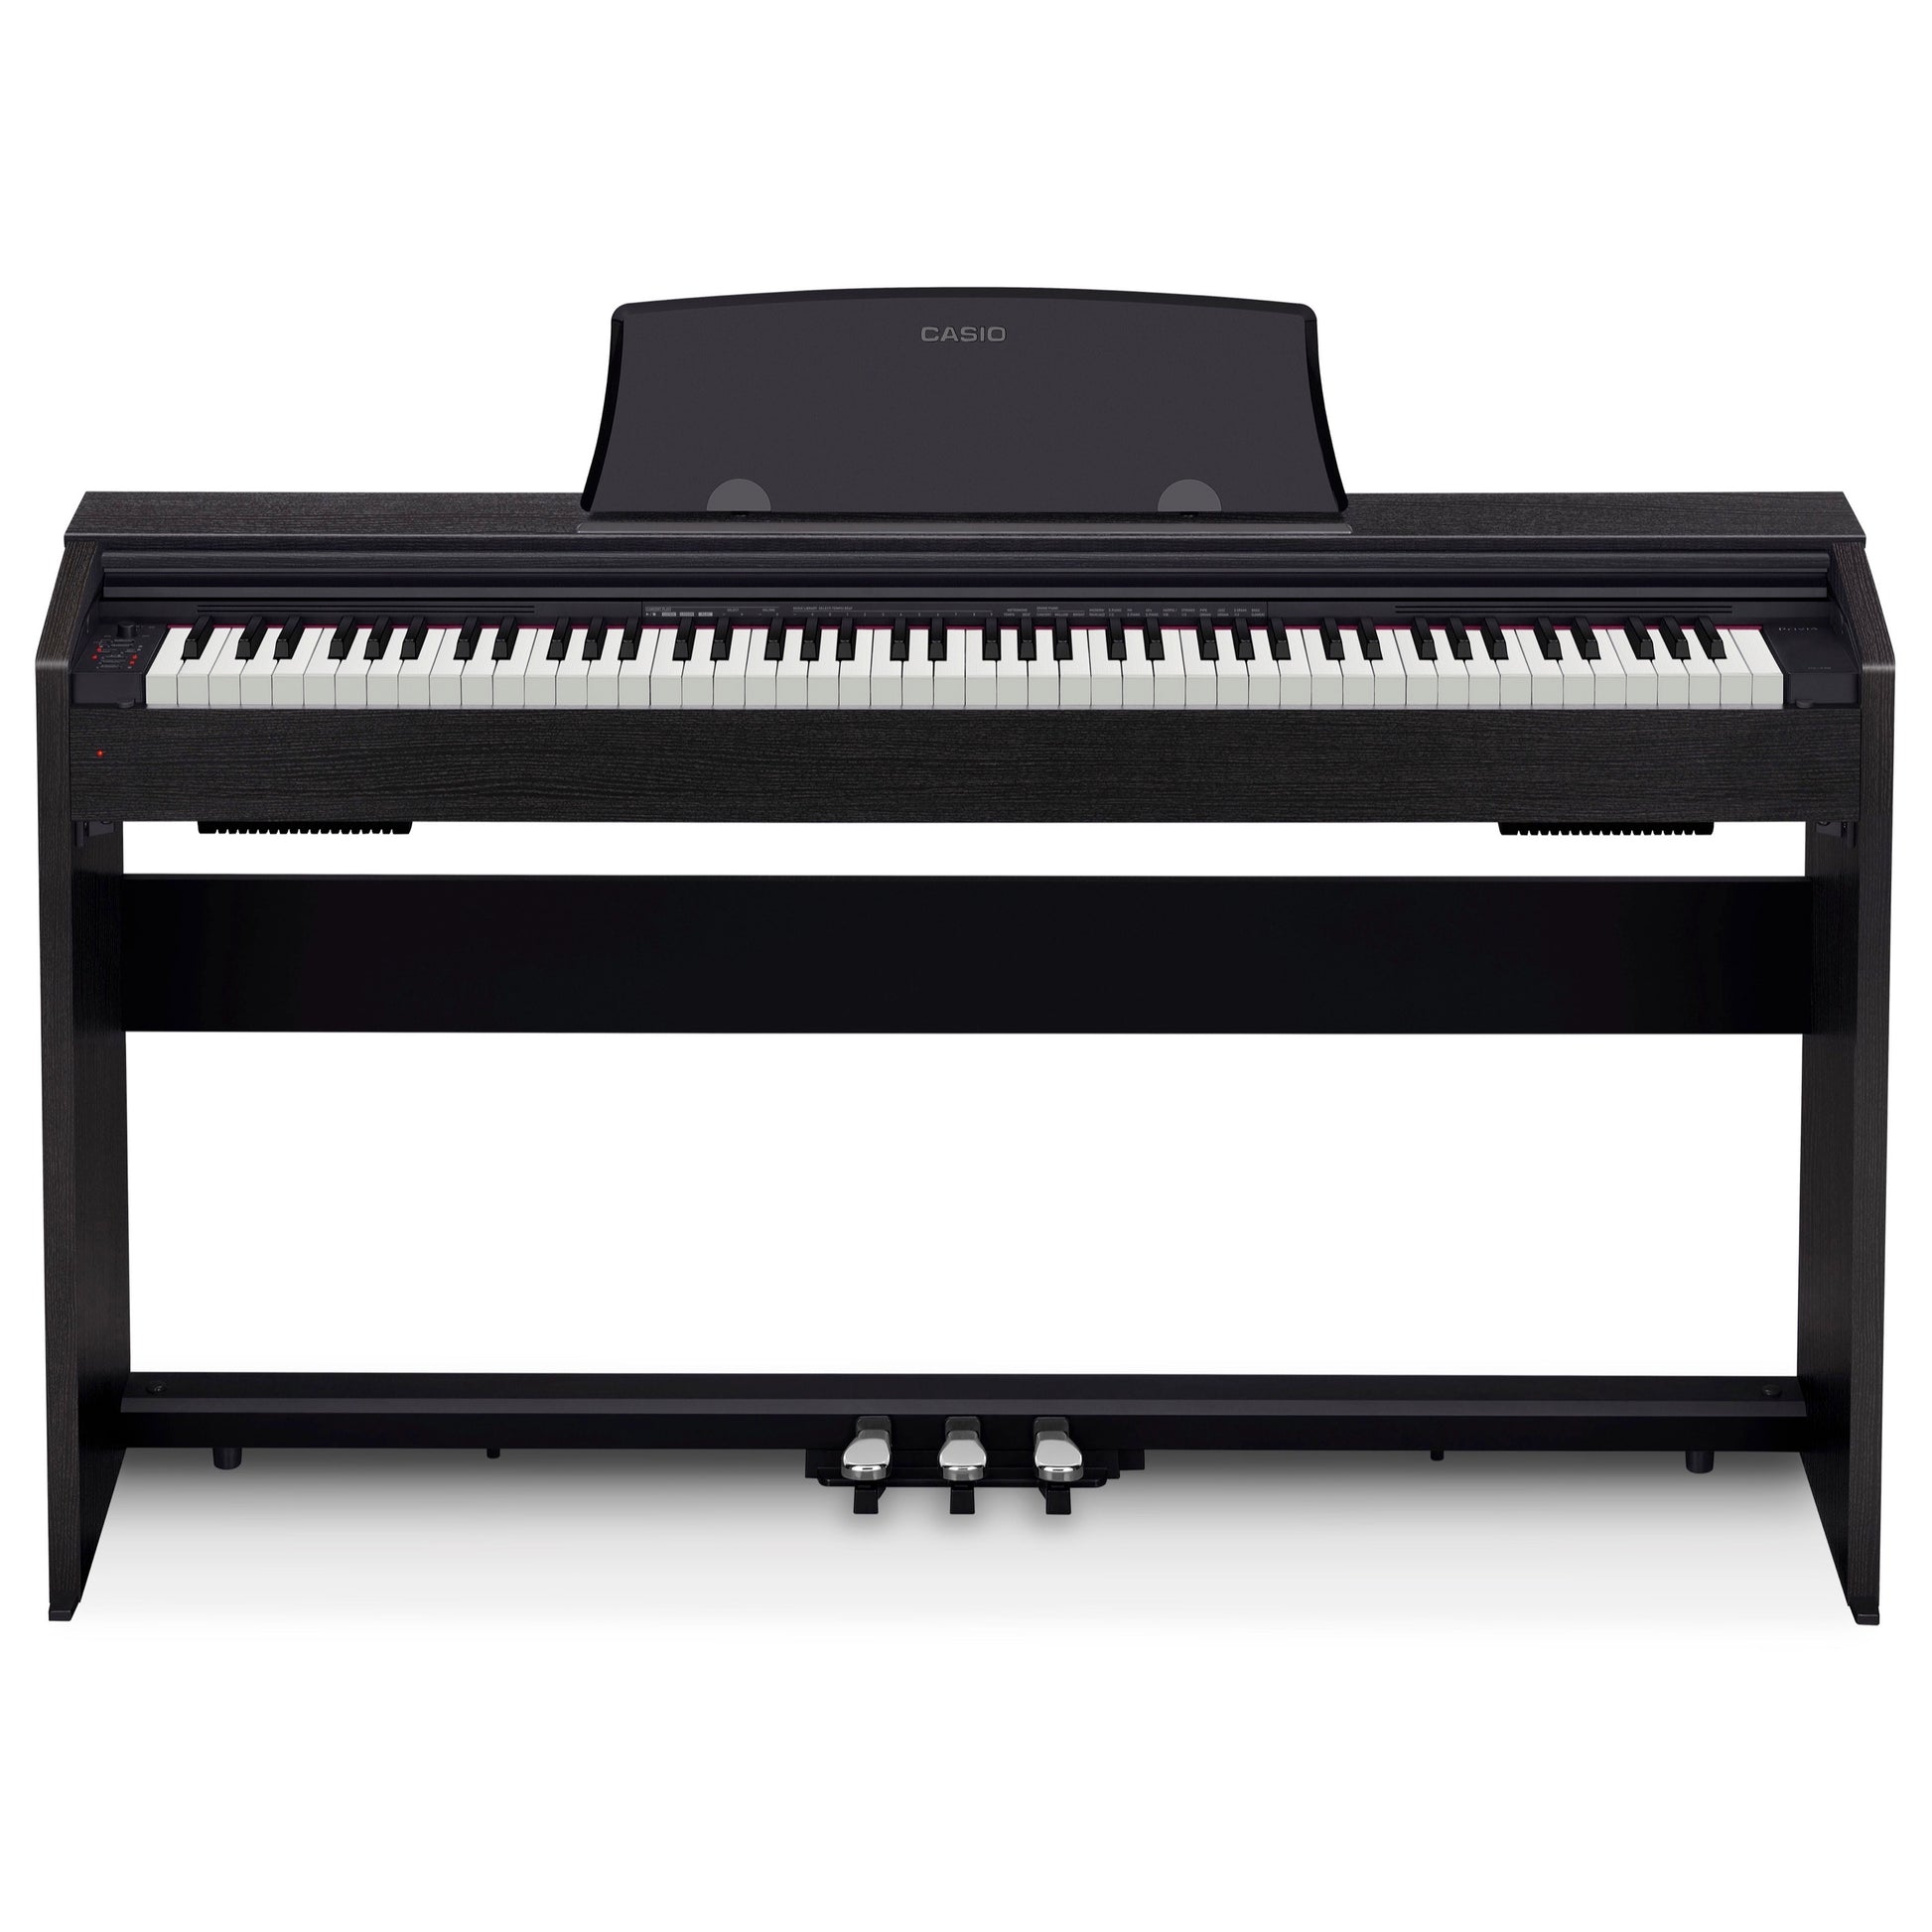 Casio PX-770 Privia Digital Piano, Black